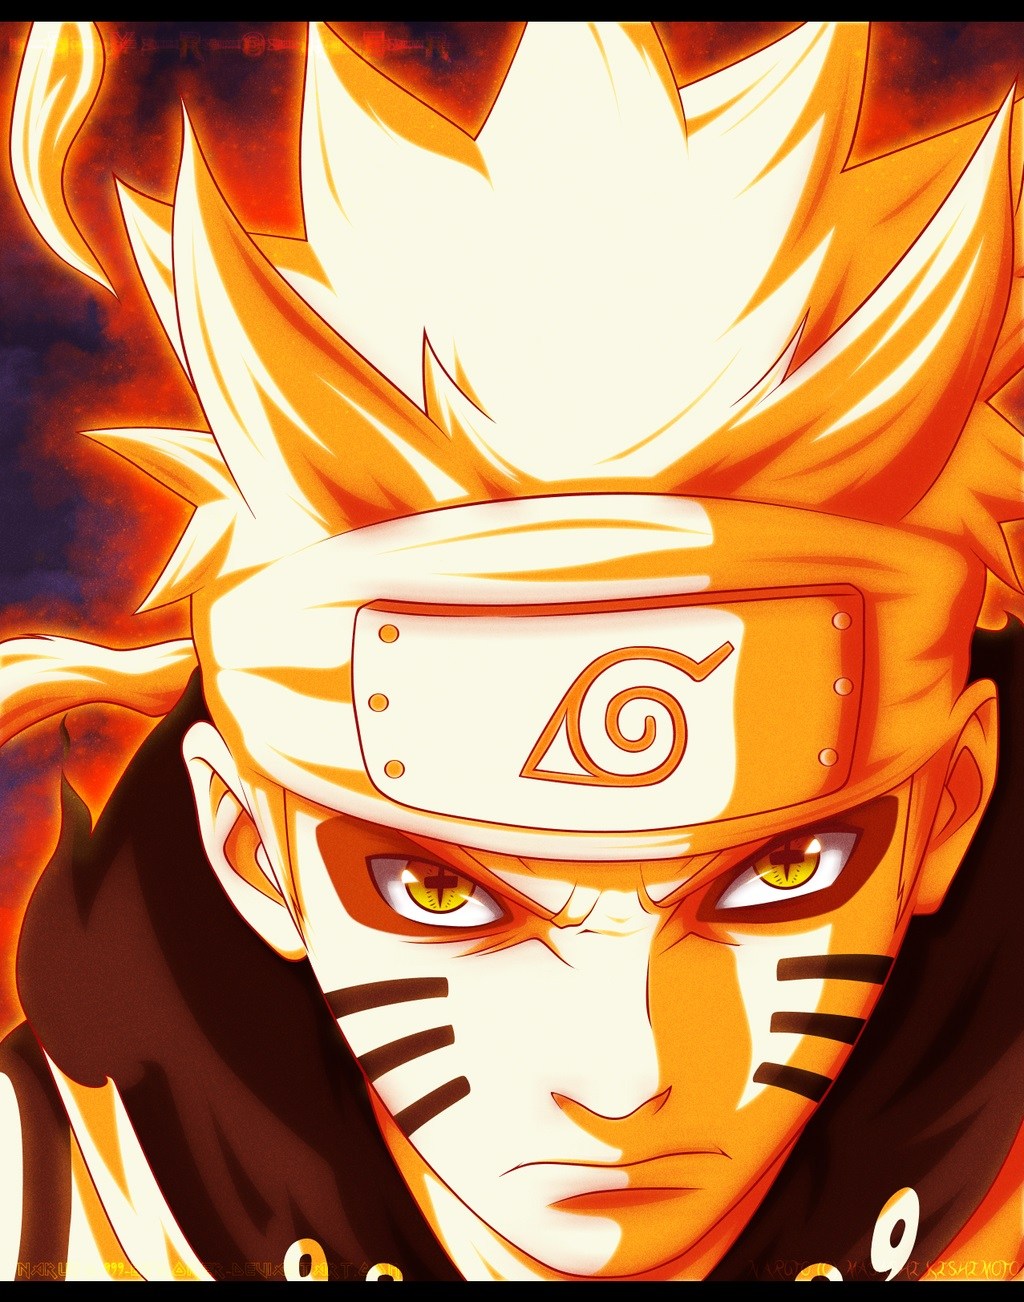 Download Wallpaper Animasi Bergerak Untuk Hp - Gambar Animasi Naruto - HD Wallpaper 